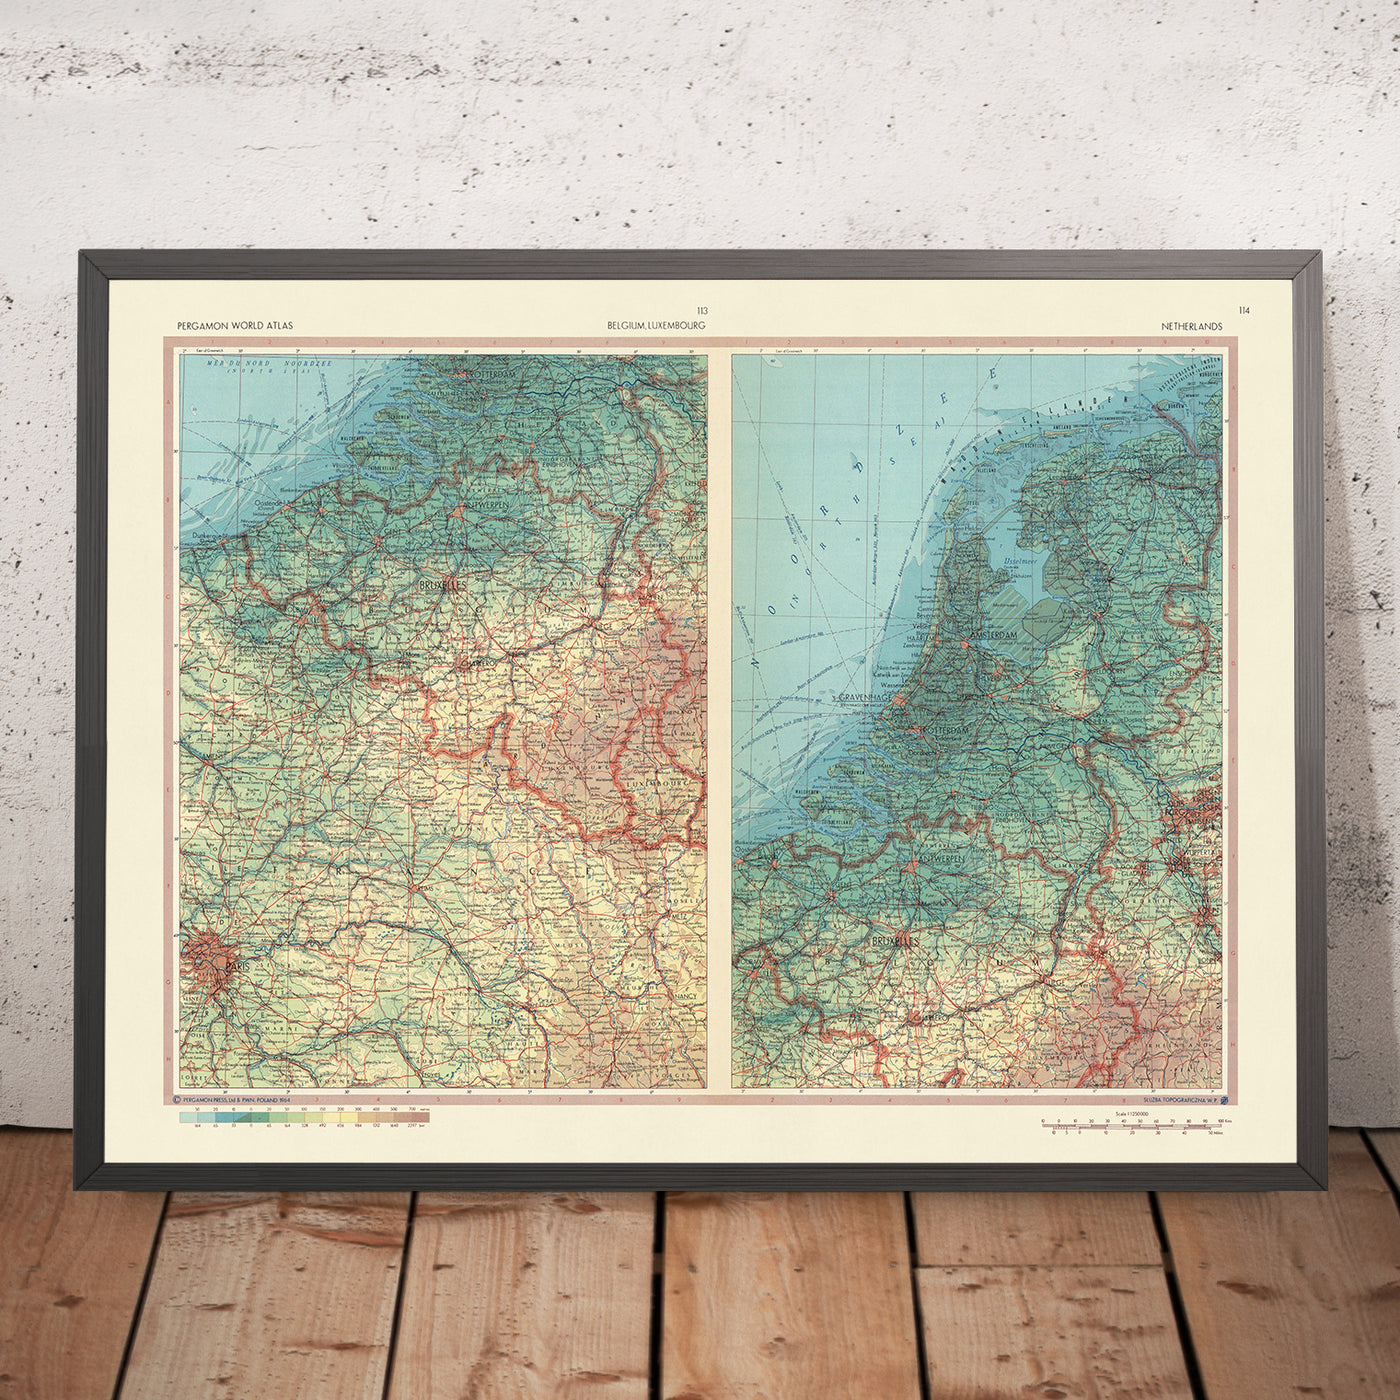 Mapa antiguo de Bélgica, Luxemburgo y Países Bajos realizado por el Servicio de Topografía del Ejército Polaco, 1967: límites políticos, paisaje físico, ciudades principales, ríos y cadenas montañosas